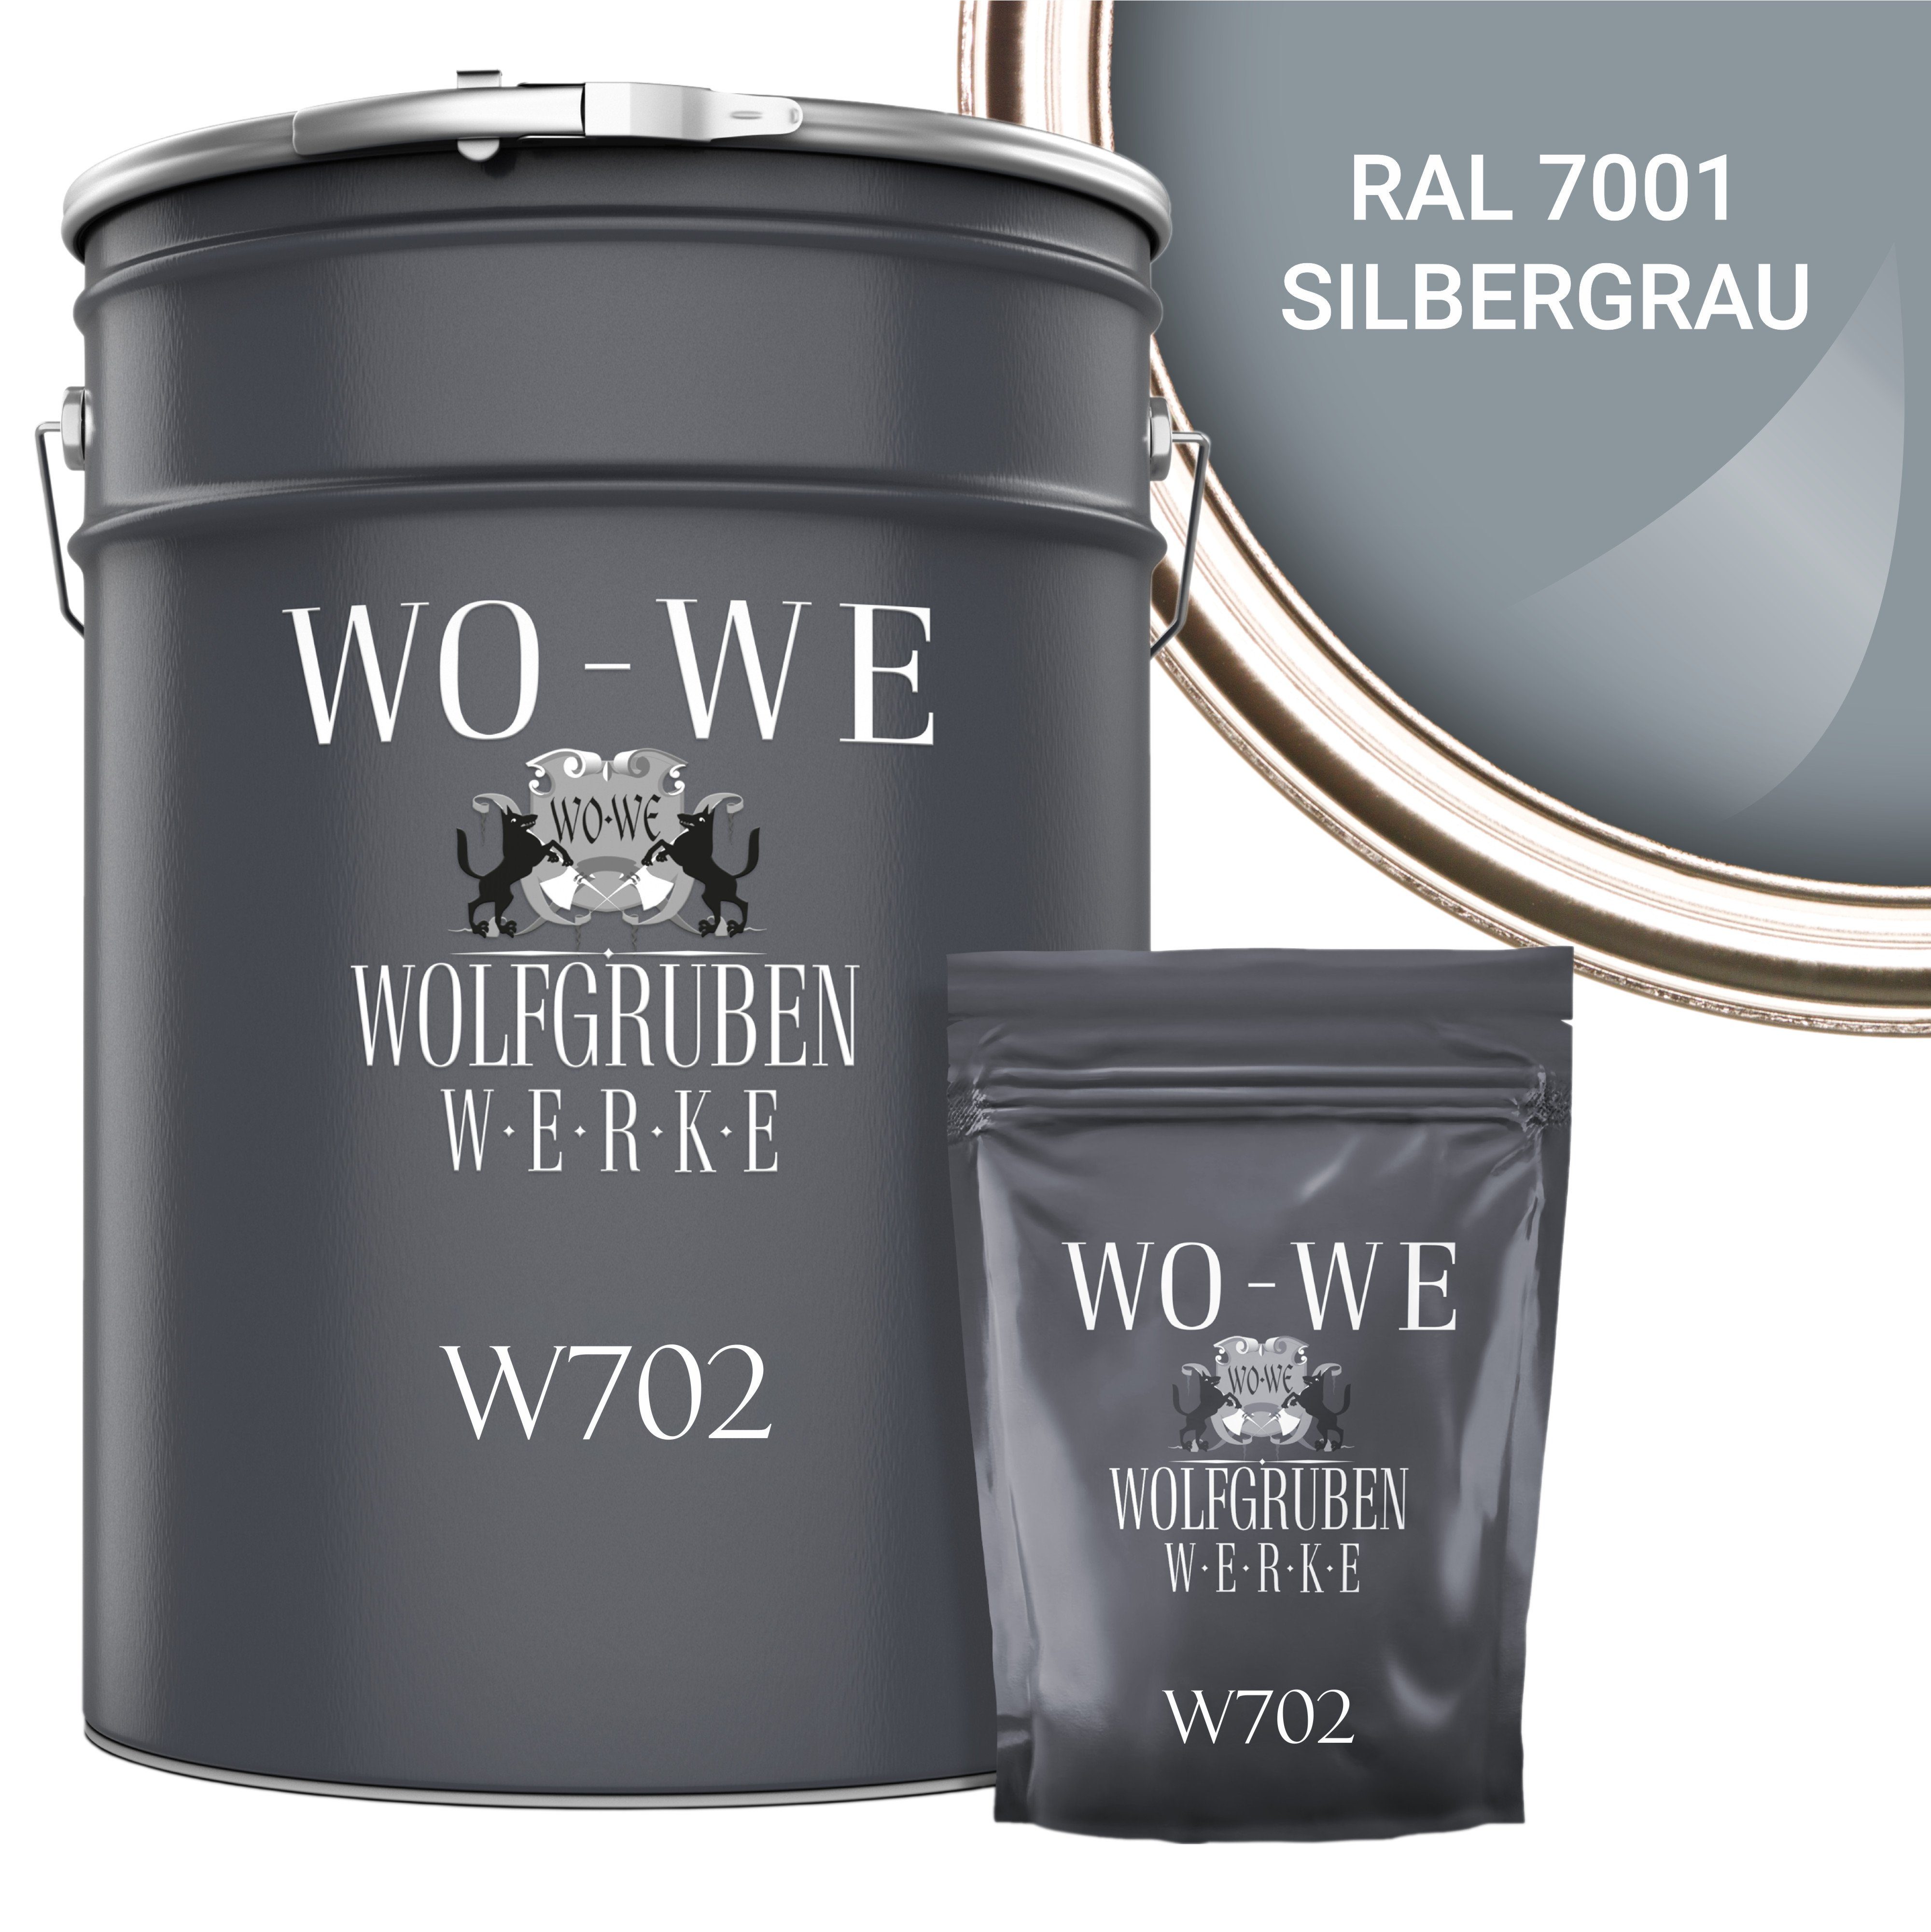 WO-WE Bodenversiegelung 2K Garagenfarbe Bodenbeschichtung 7001 RAL Epoxidharz Silbergrau W702, Seidenglänzend, 2,5-20Kg